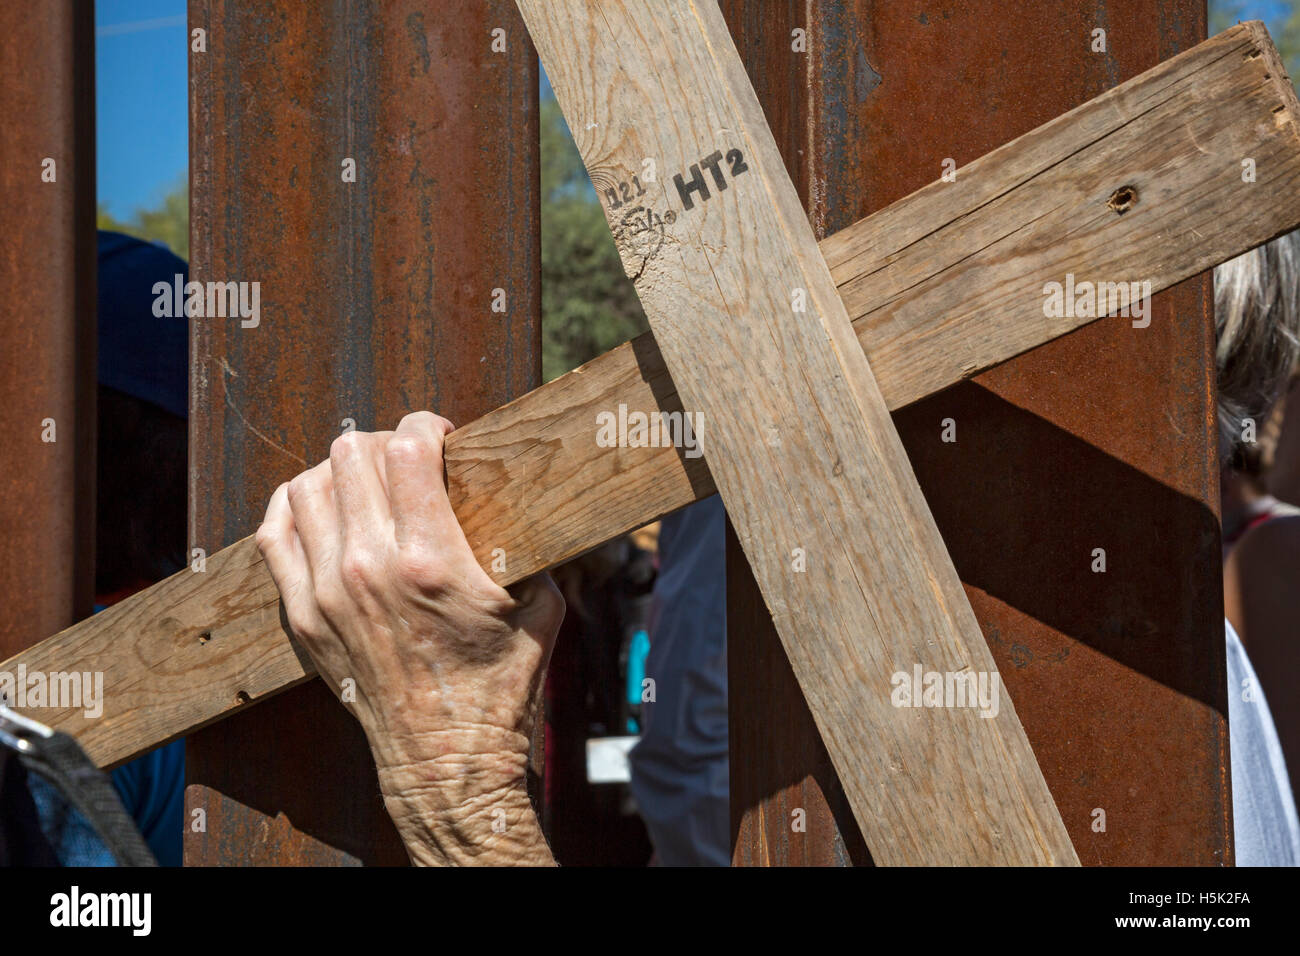 Nogales Mexique - Les militantes ont organisé des rassemblements pour s'opposer à la frontière États-Unis-Mexique. Une femme a occupé une croix de l'autre côté de la frontière. Banque D'Images